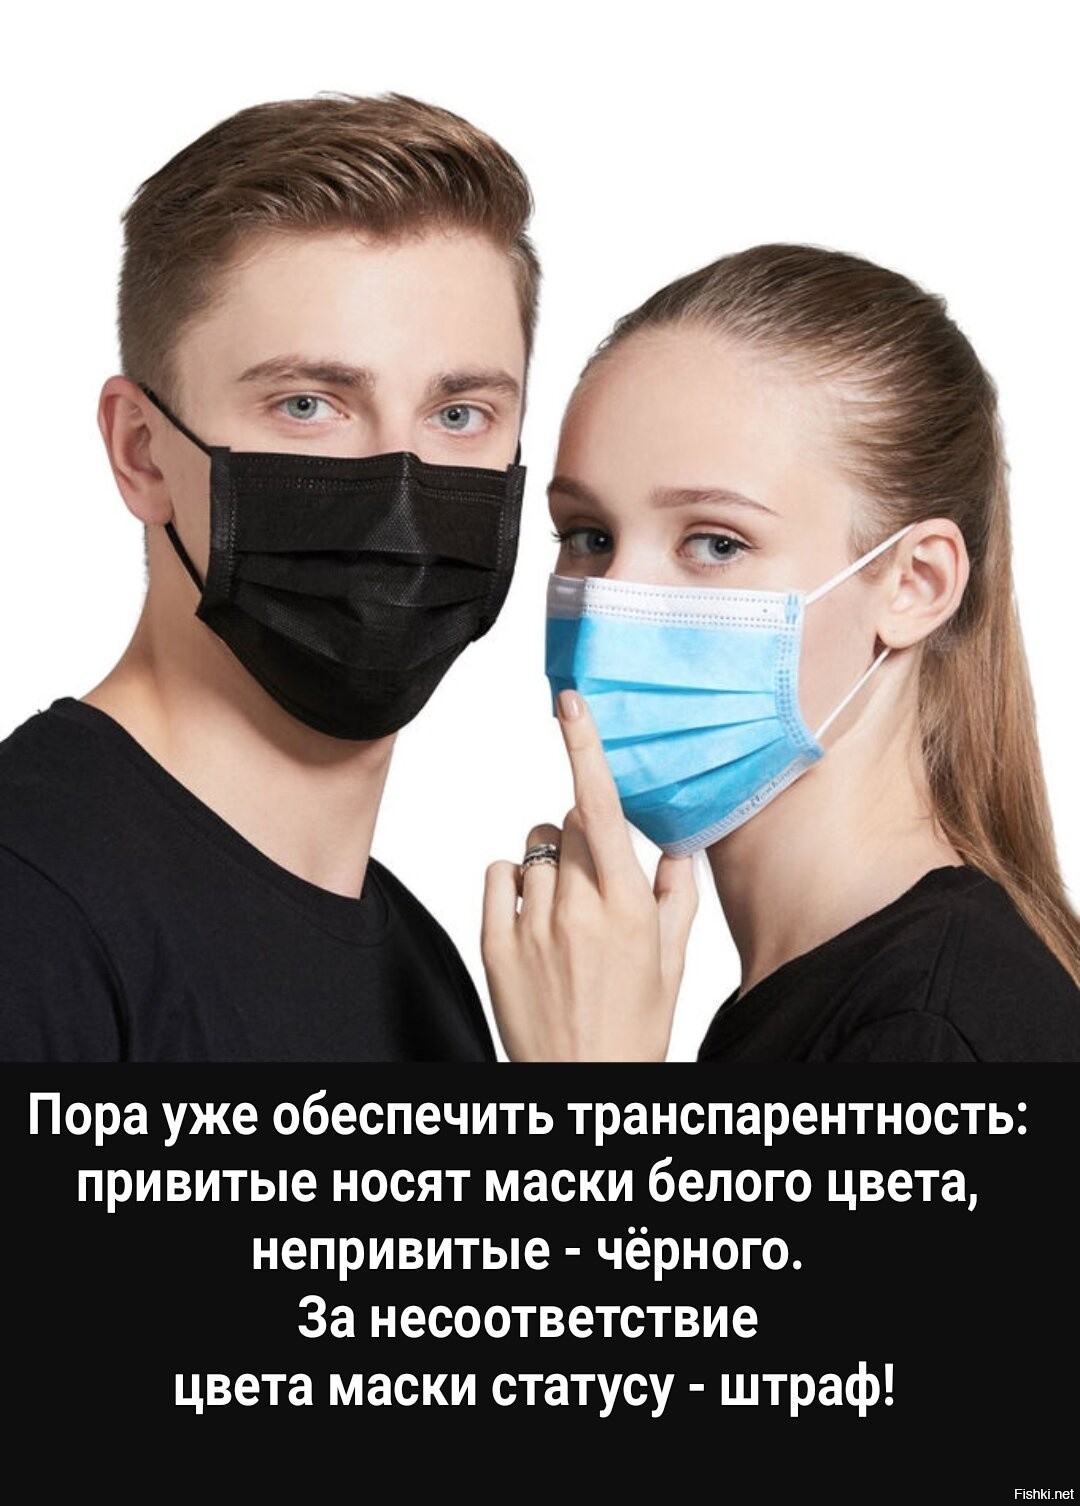 Они надели маски. Защитная маска для носа. Надевание маски. Правильная маска. Маска для лица с фиксатором.